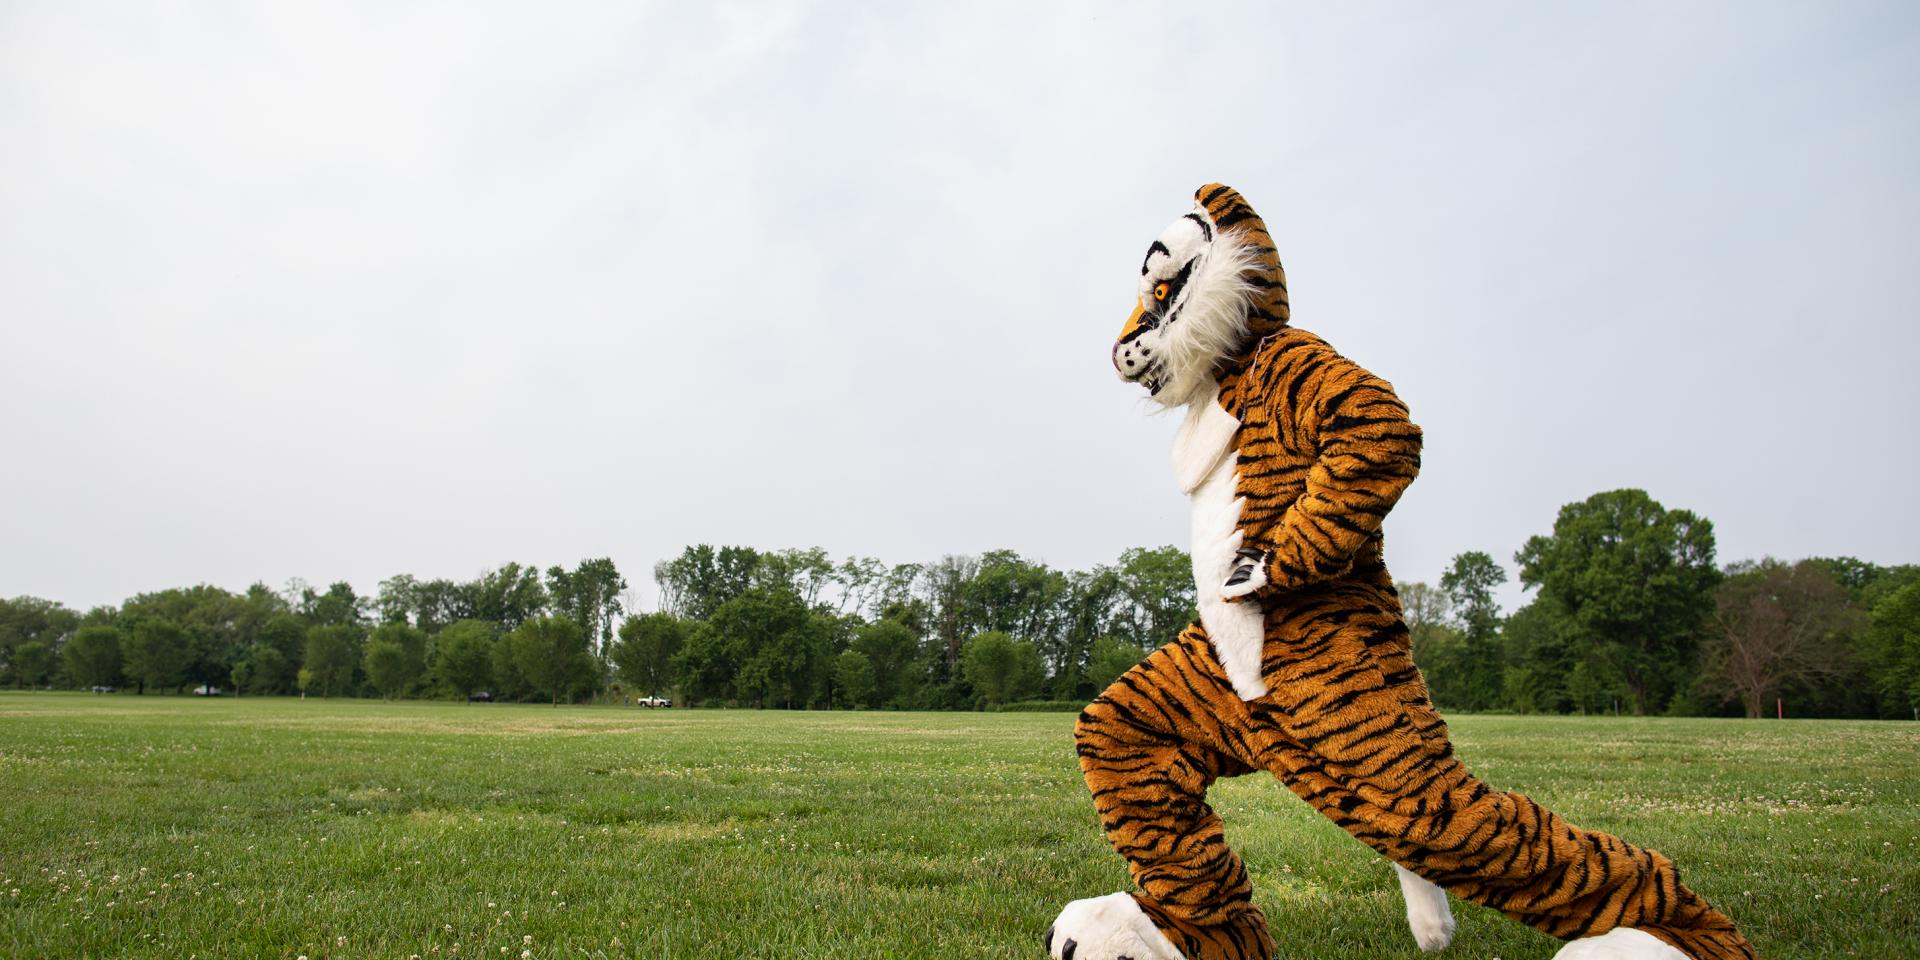 Tiger mascot running across a field